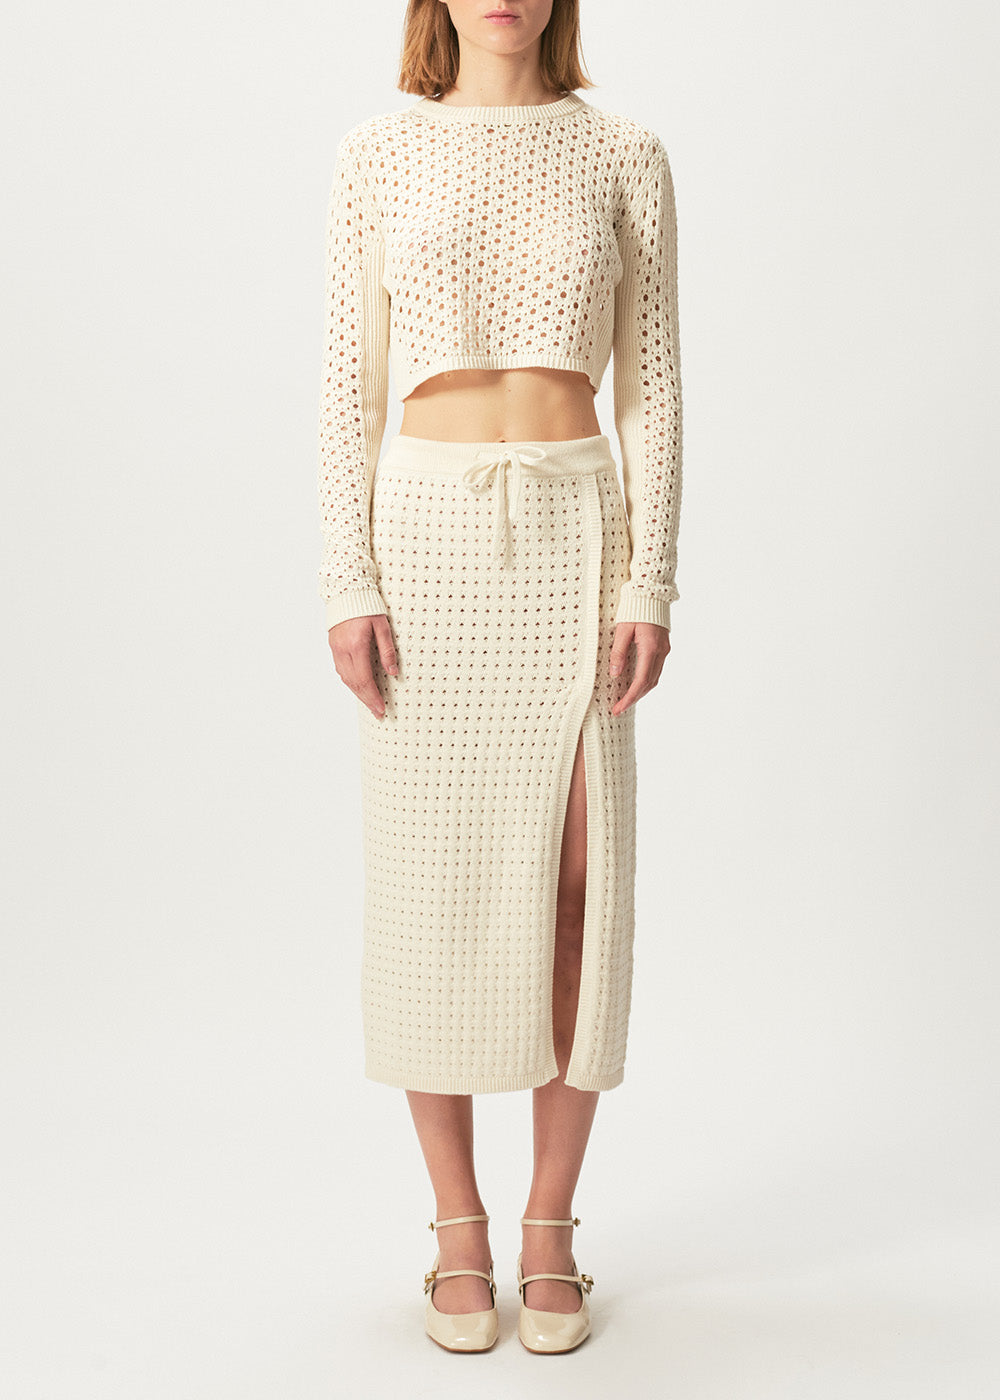 Mona Crochet Skirt - Medium / Ivory